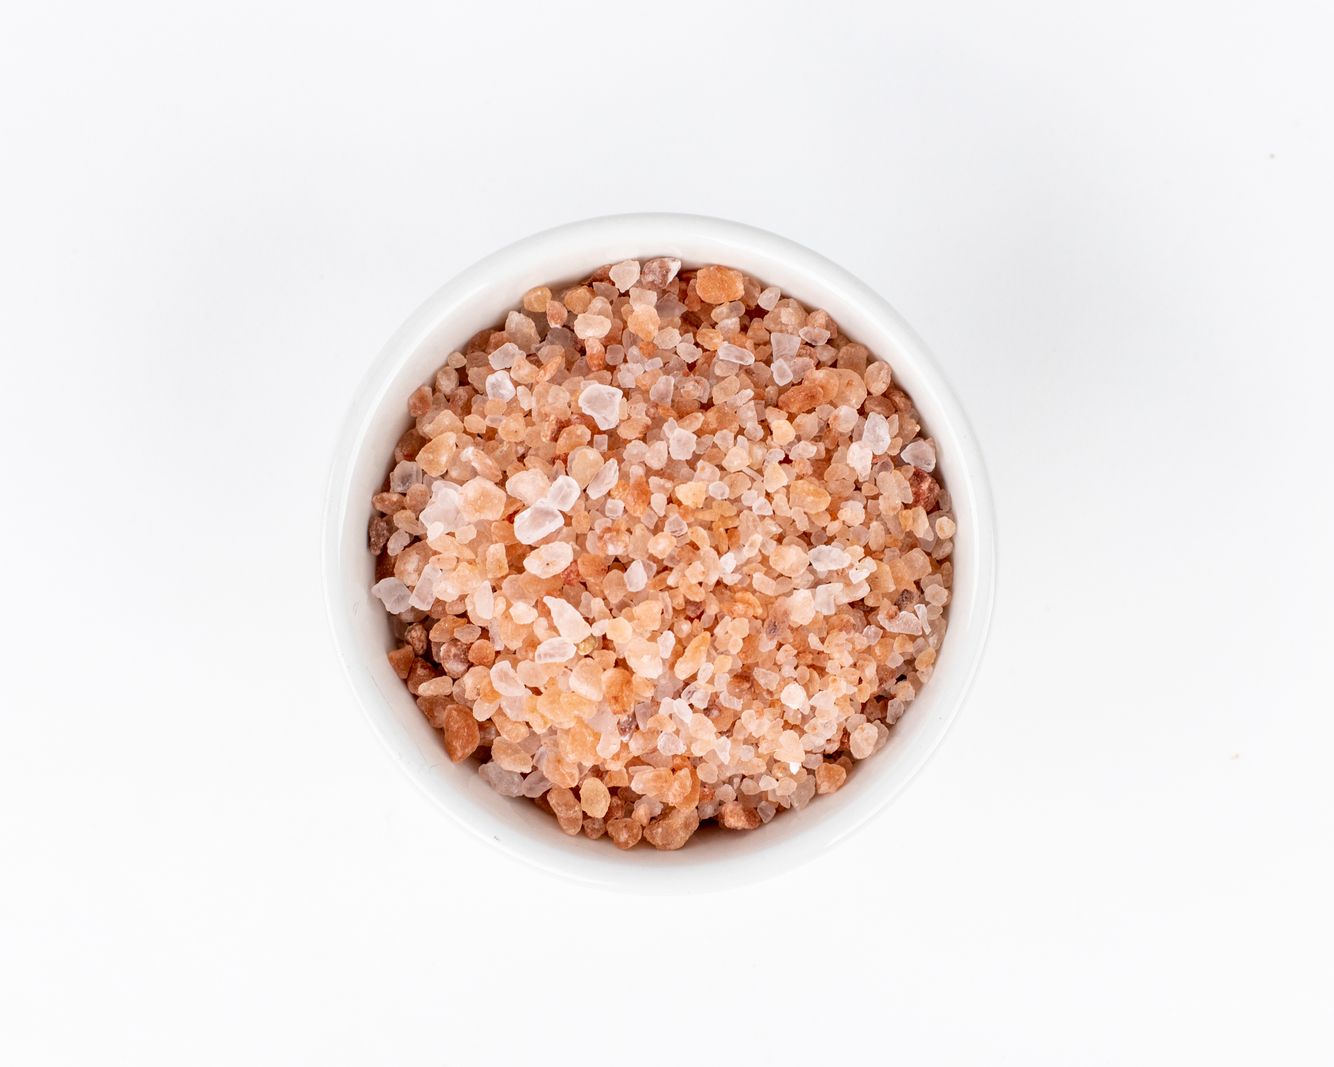 Vilgain Himalayan pink salt